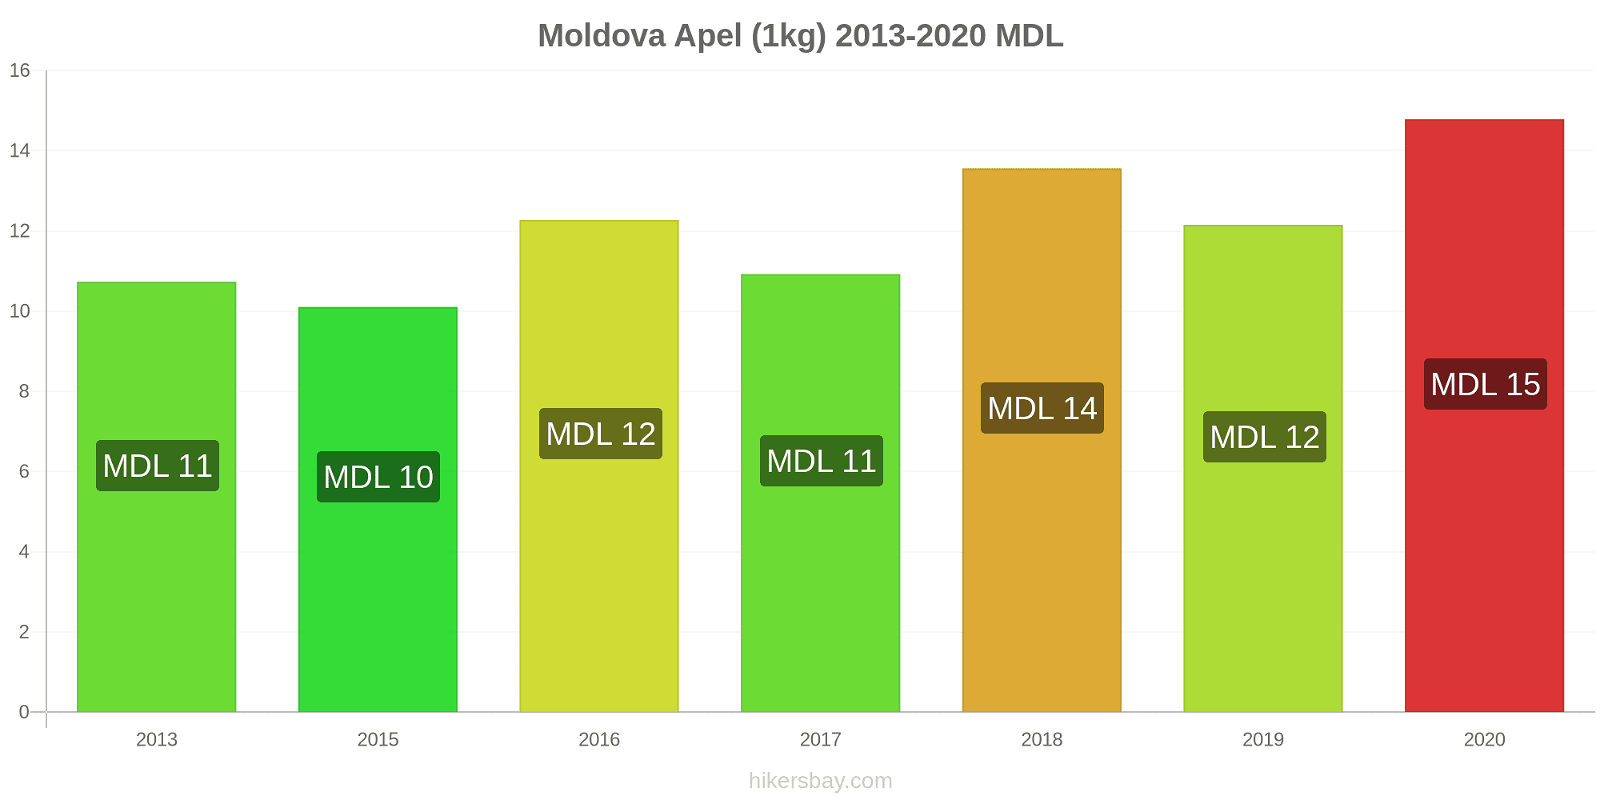 Moldova perubahan harga Apel (1kg) hikersbay.com